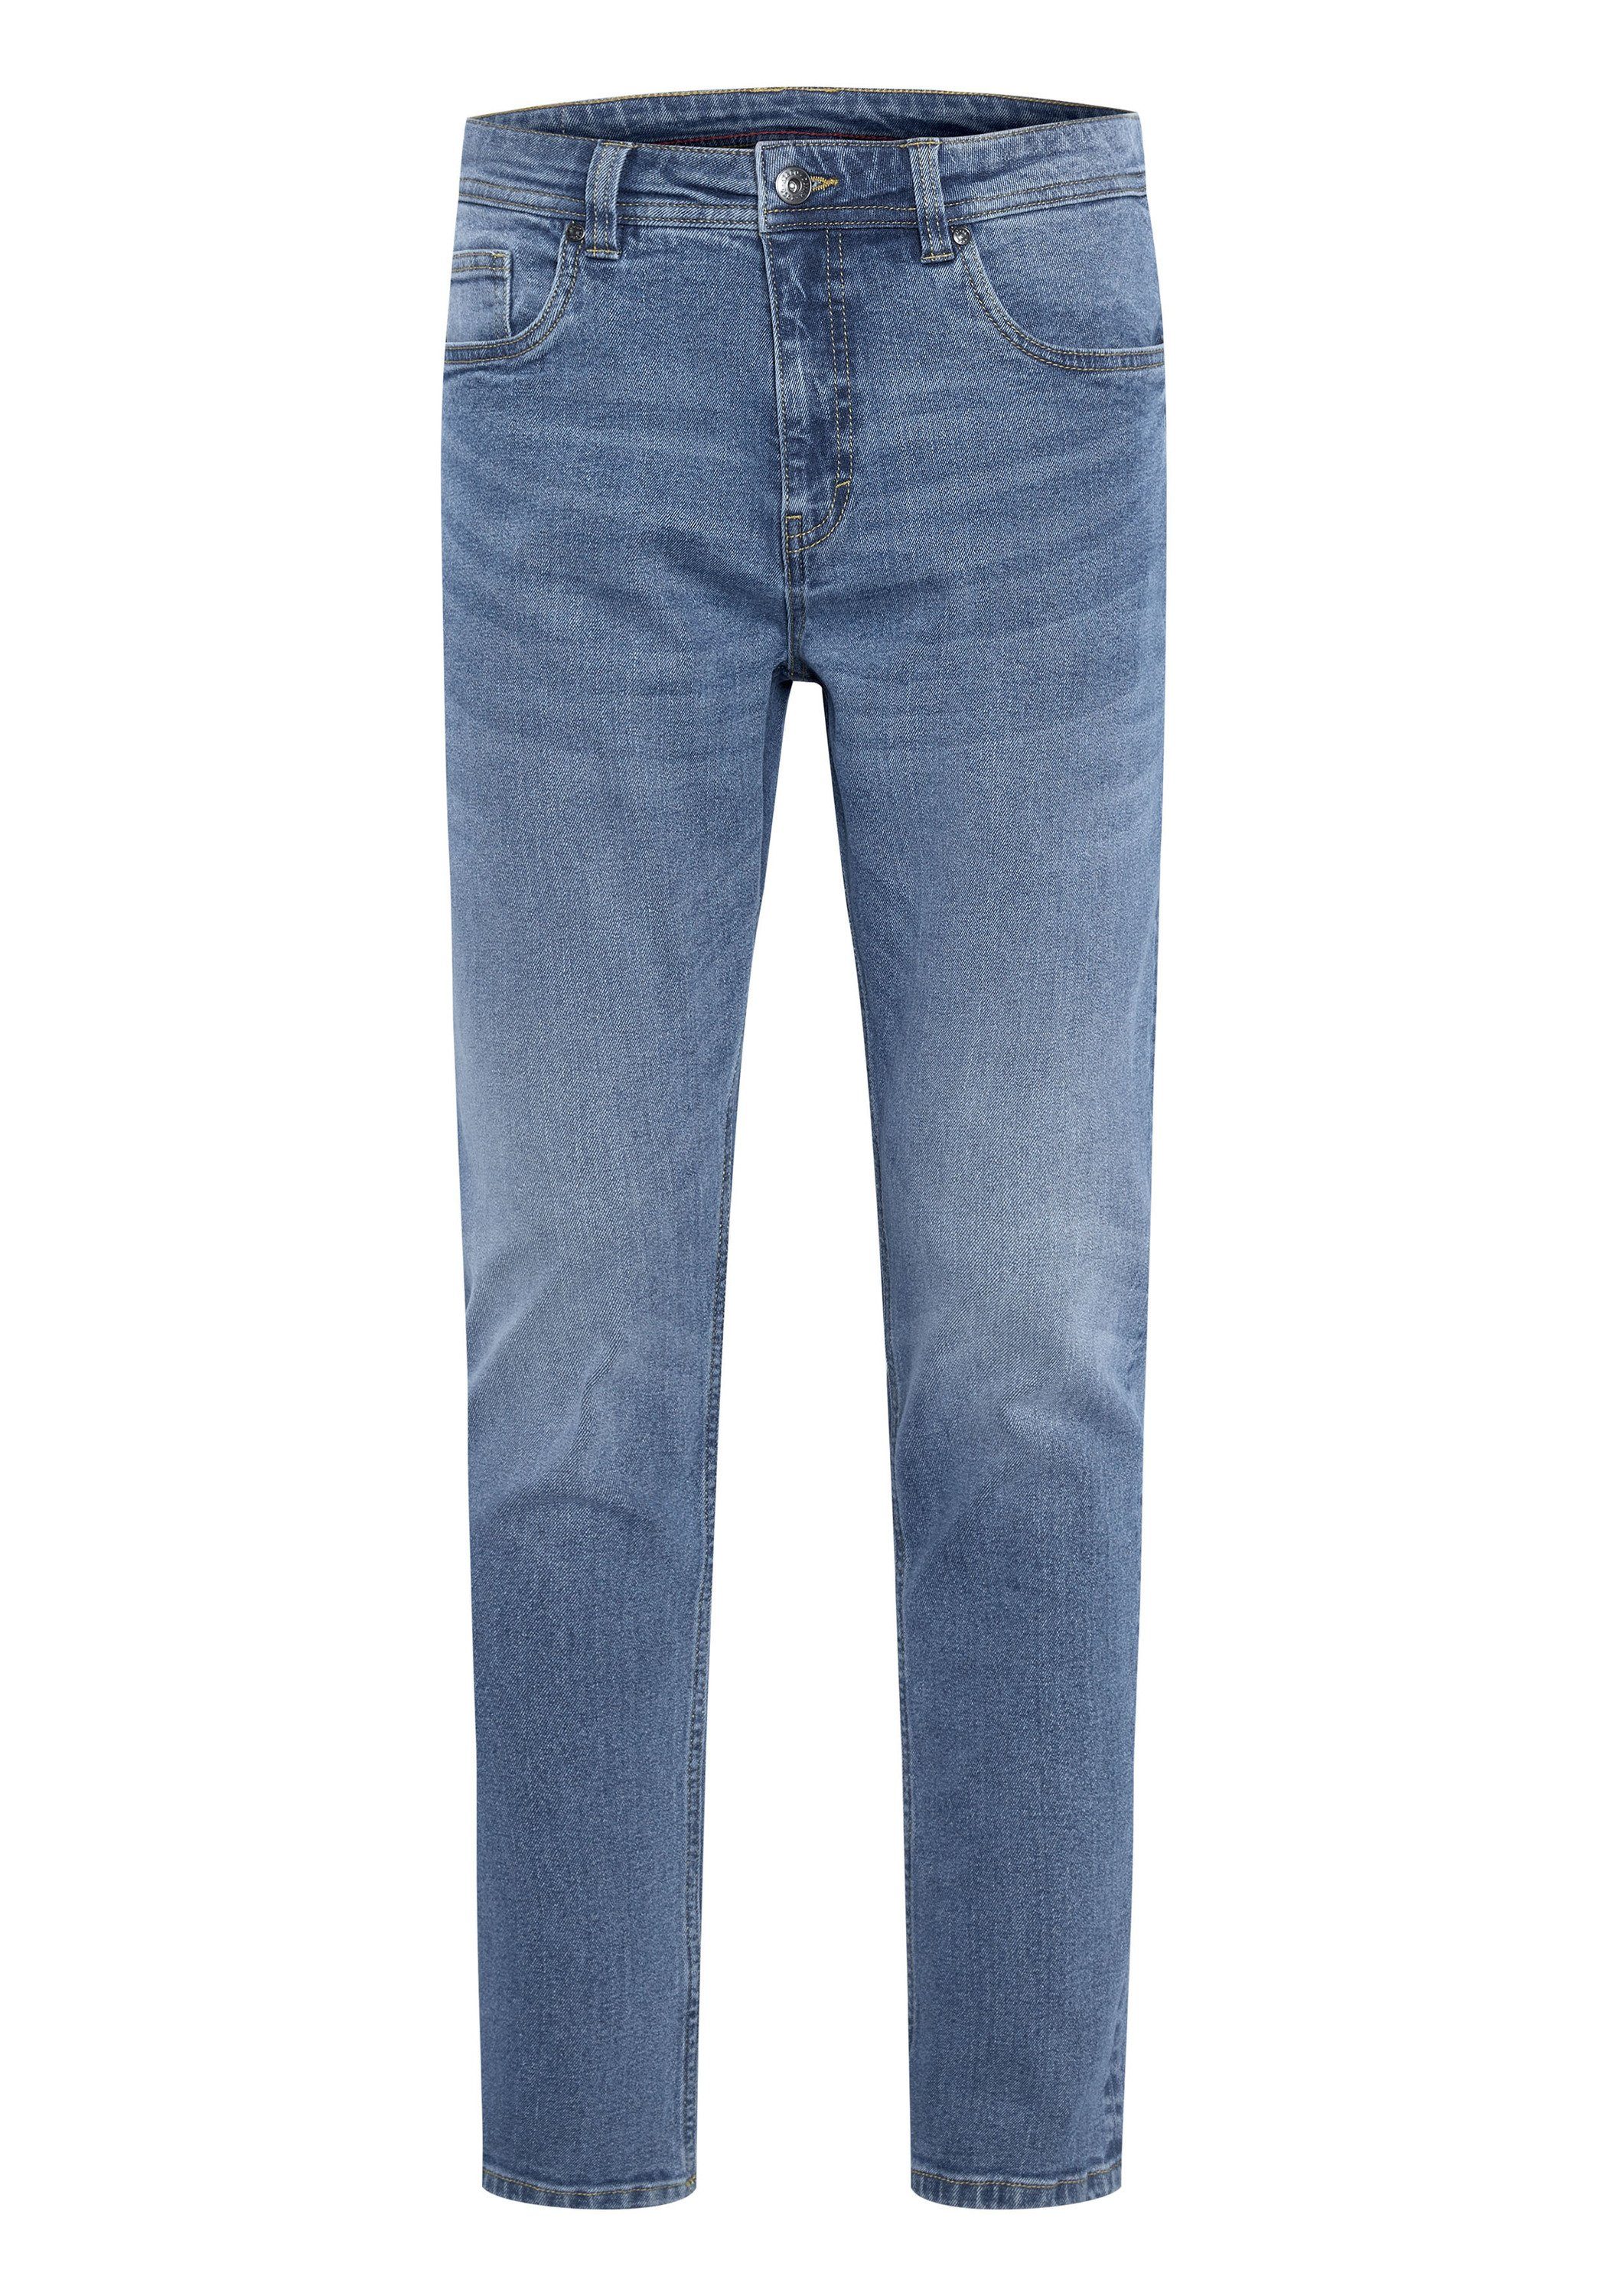 JZ & Co Waschung Blue mit 48 leichter 5-Pocket-Jeans Dark